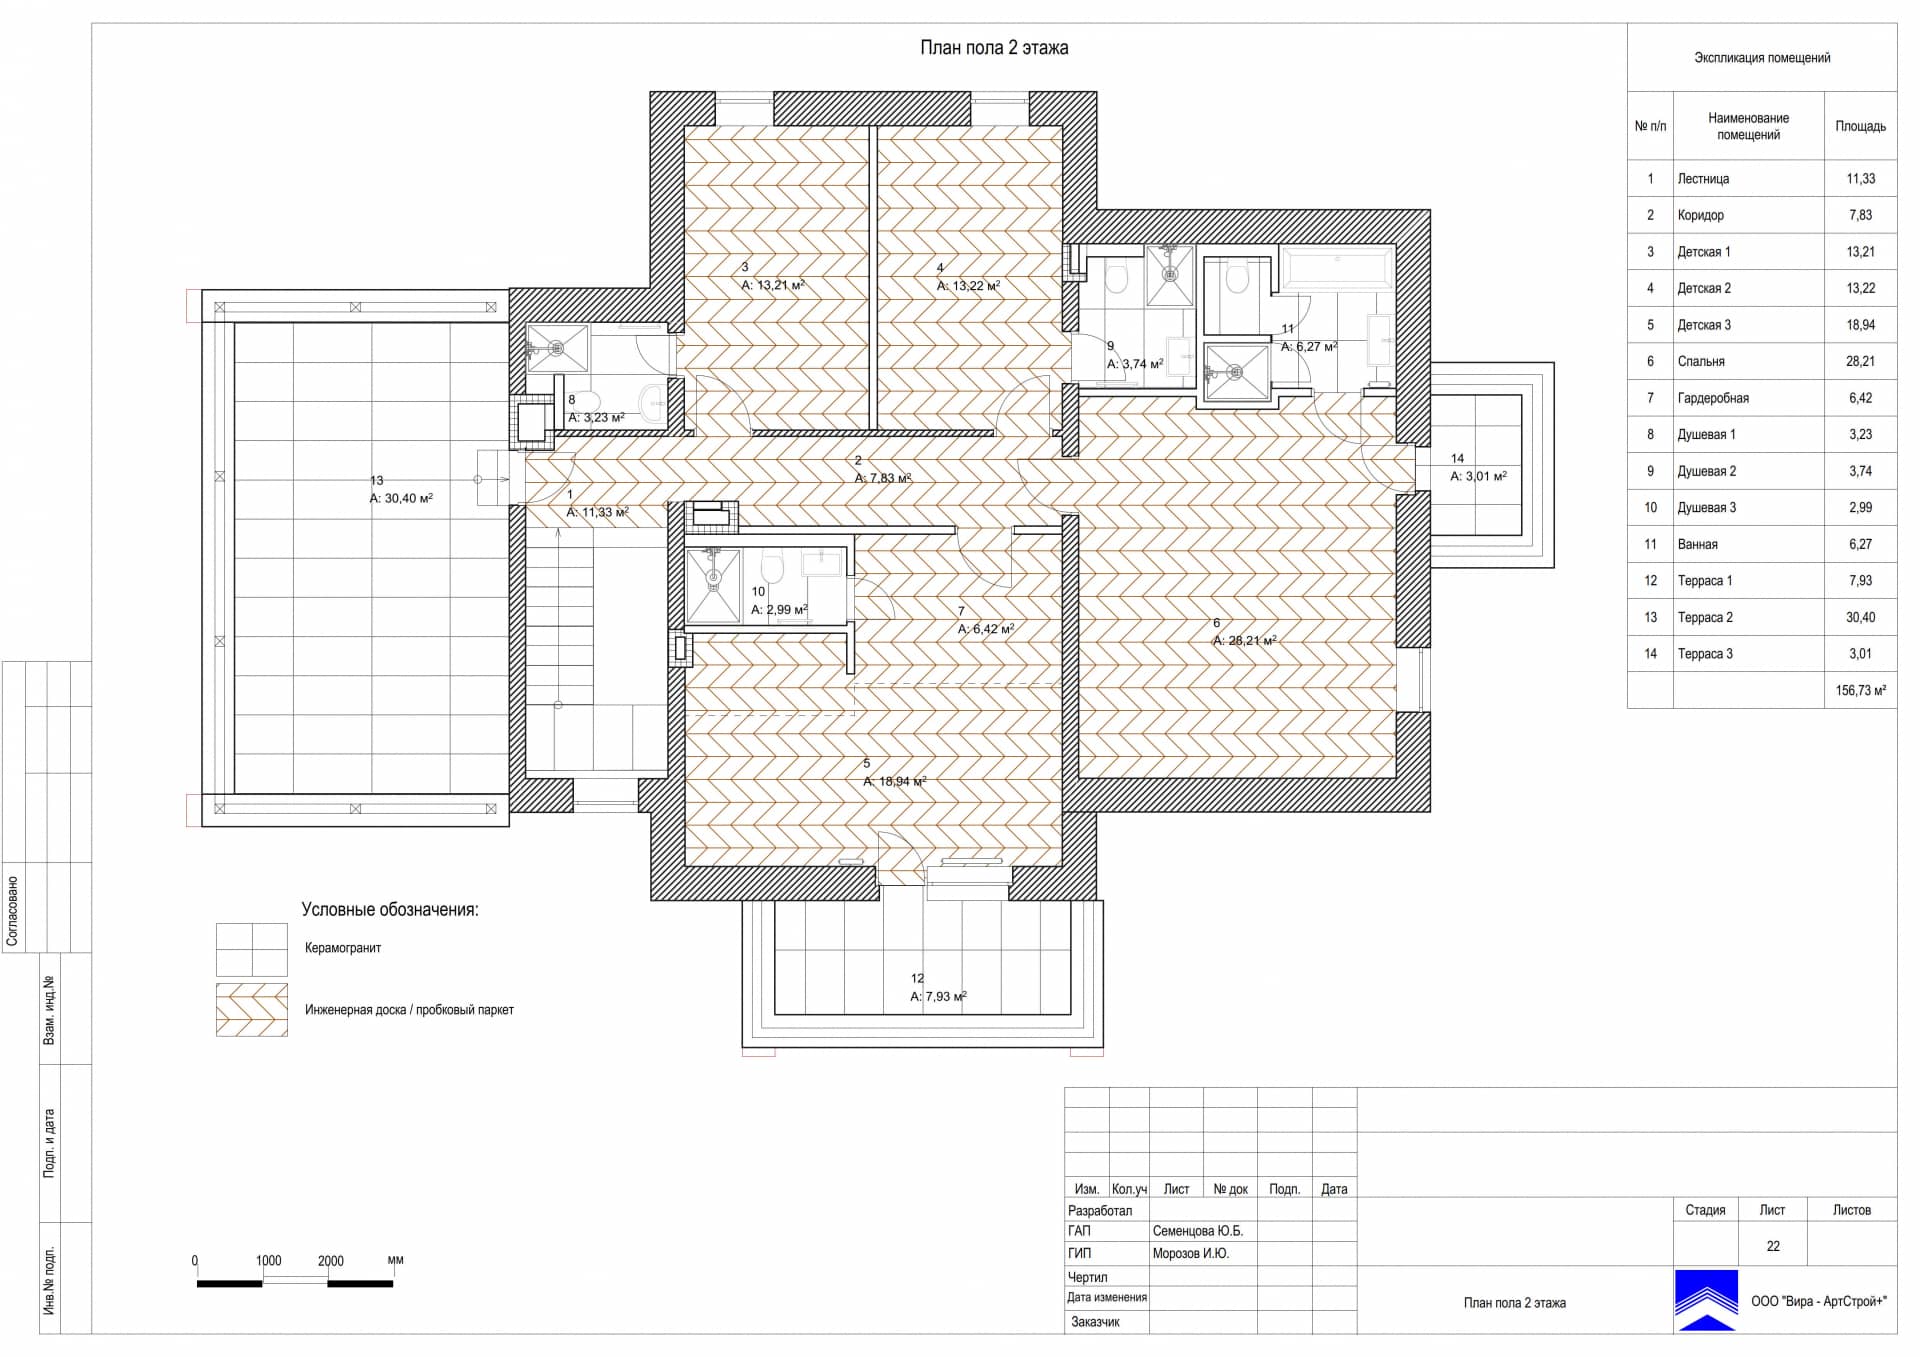 План пола 2 этажа, дом 471 м² в КП «Сорочаны»